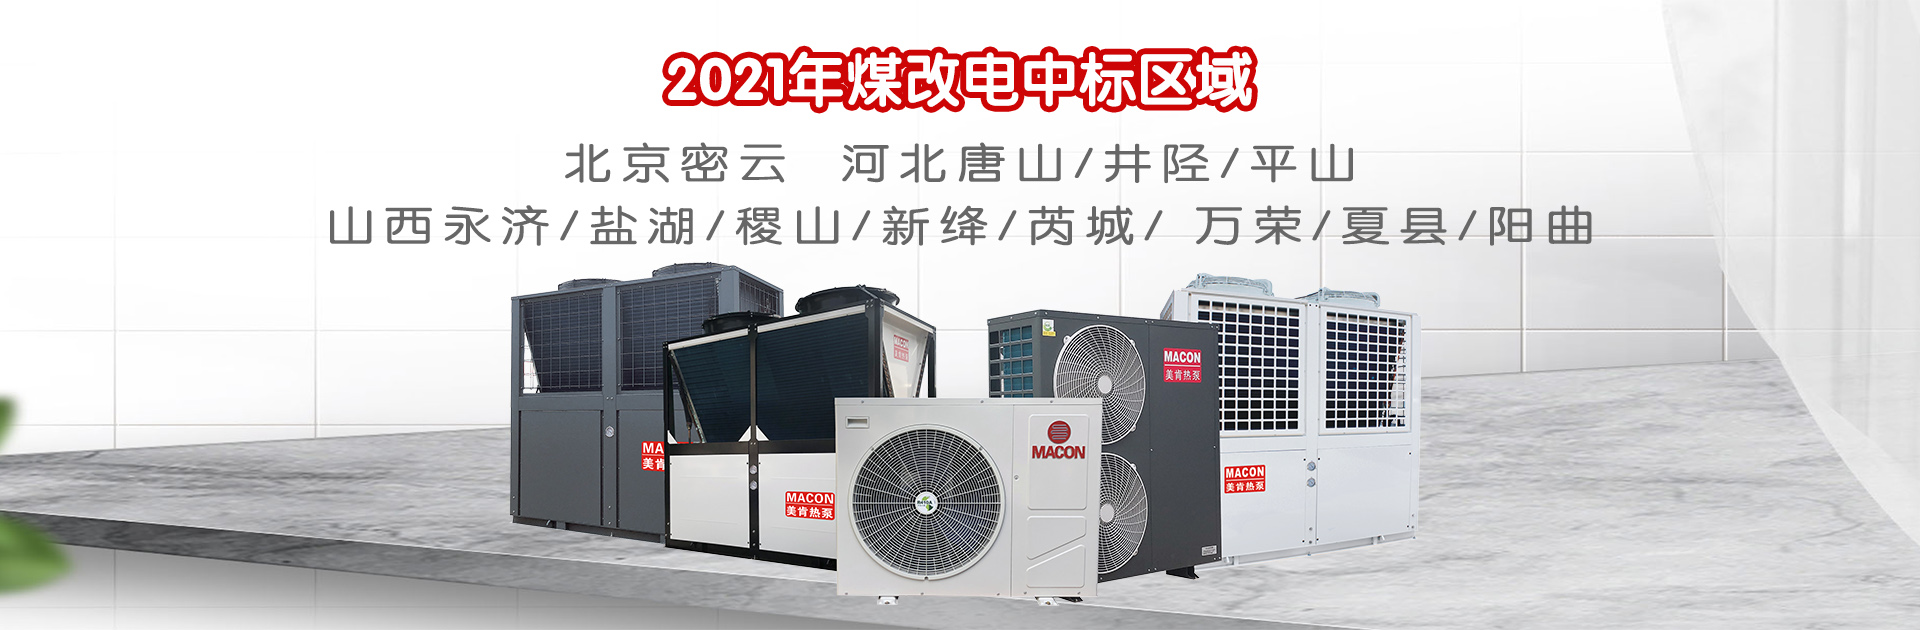 名企巡礼|美肯热泵即将亮相2021-2022中国暖通产业大会